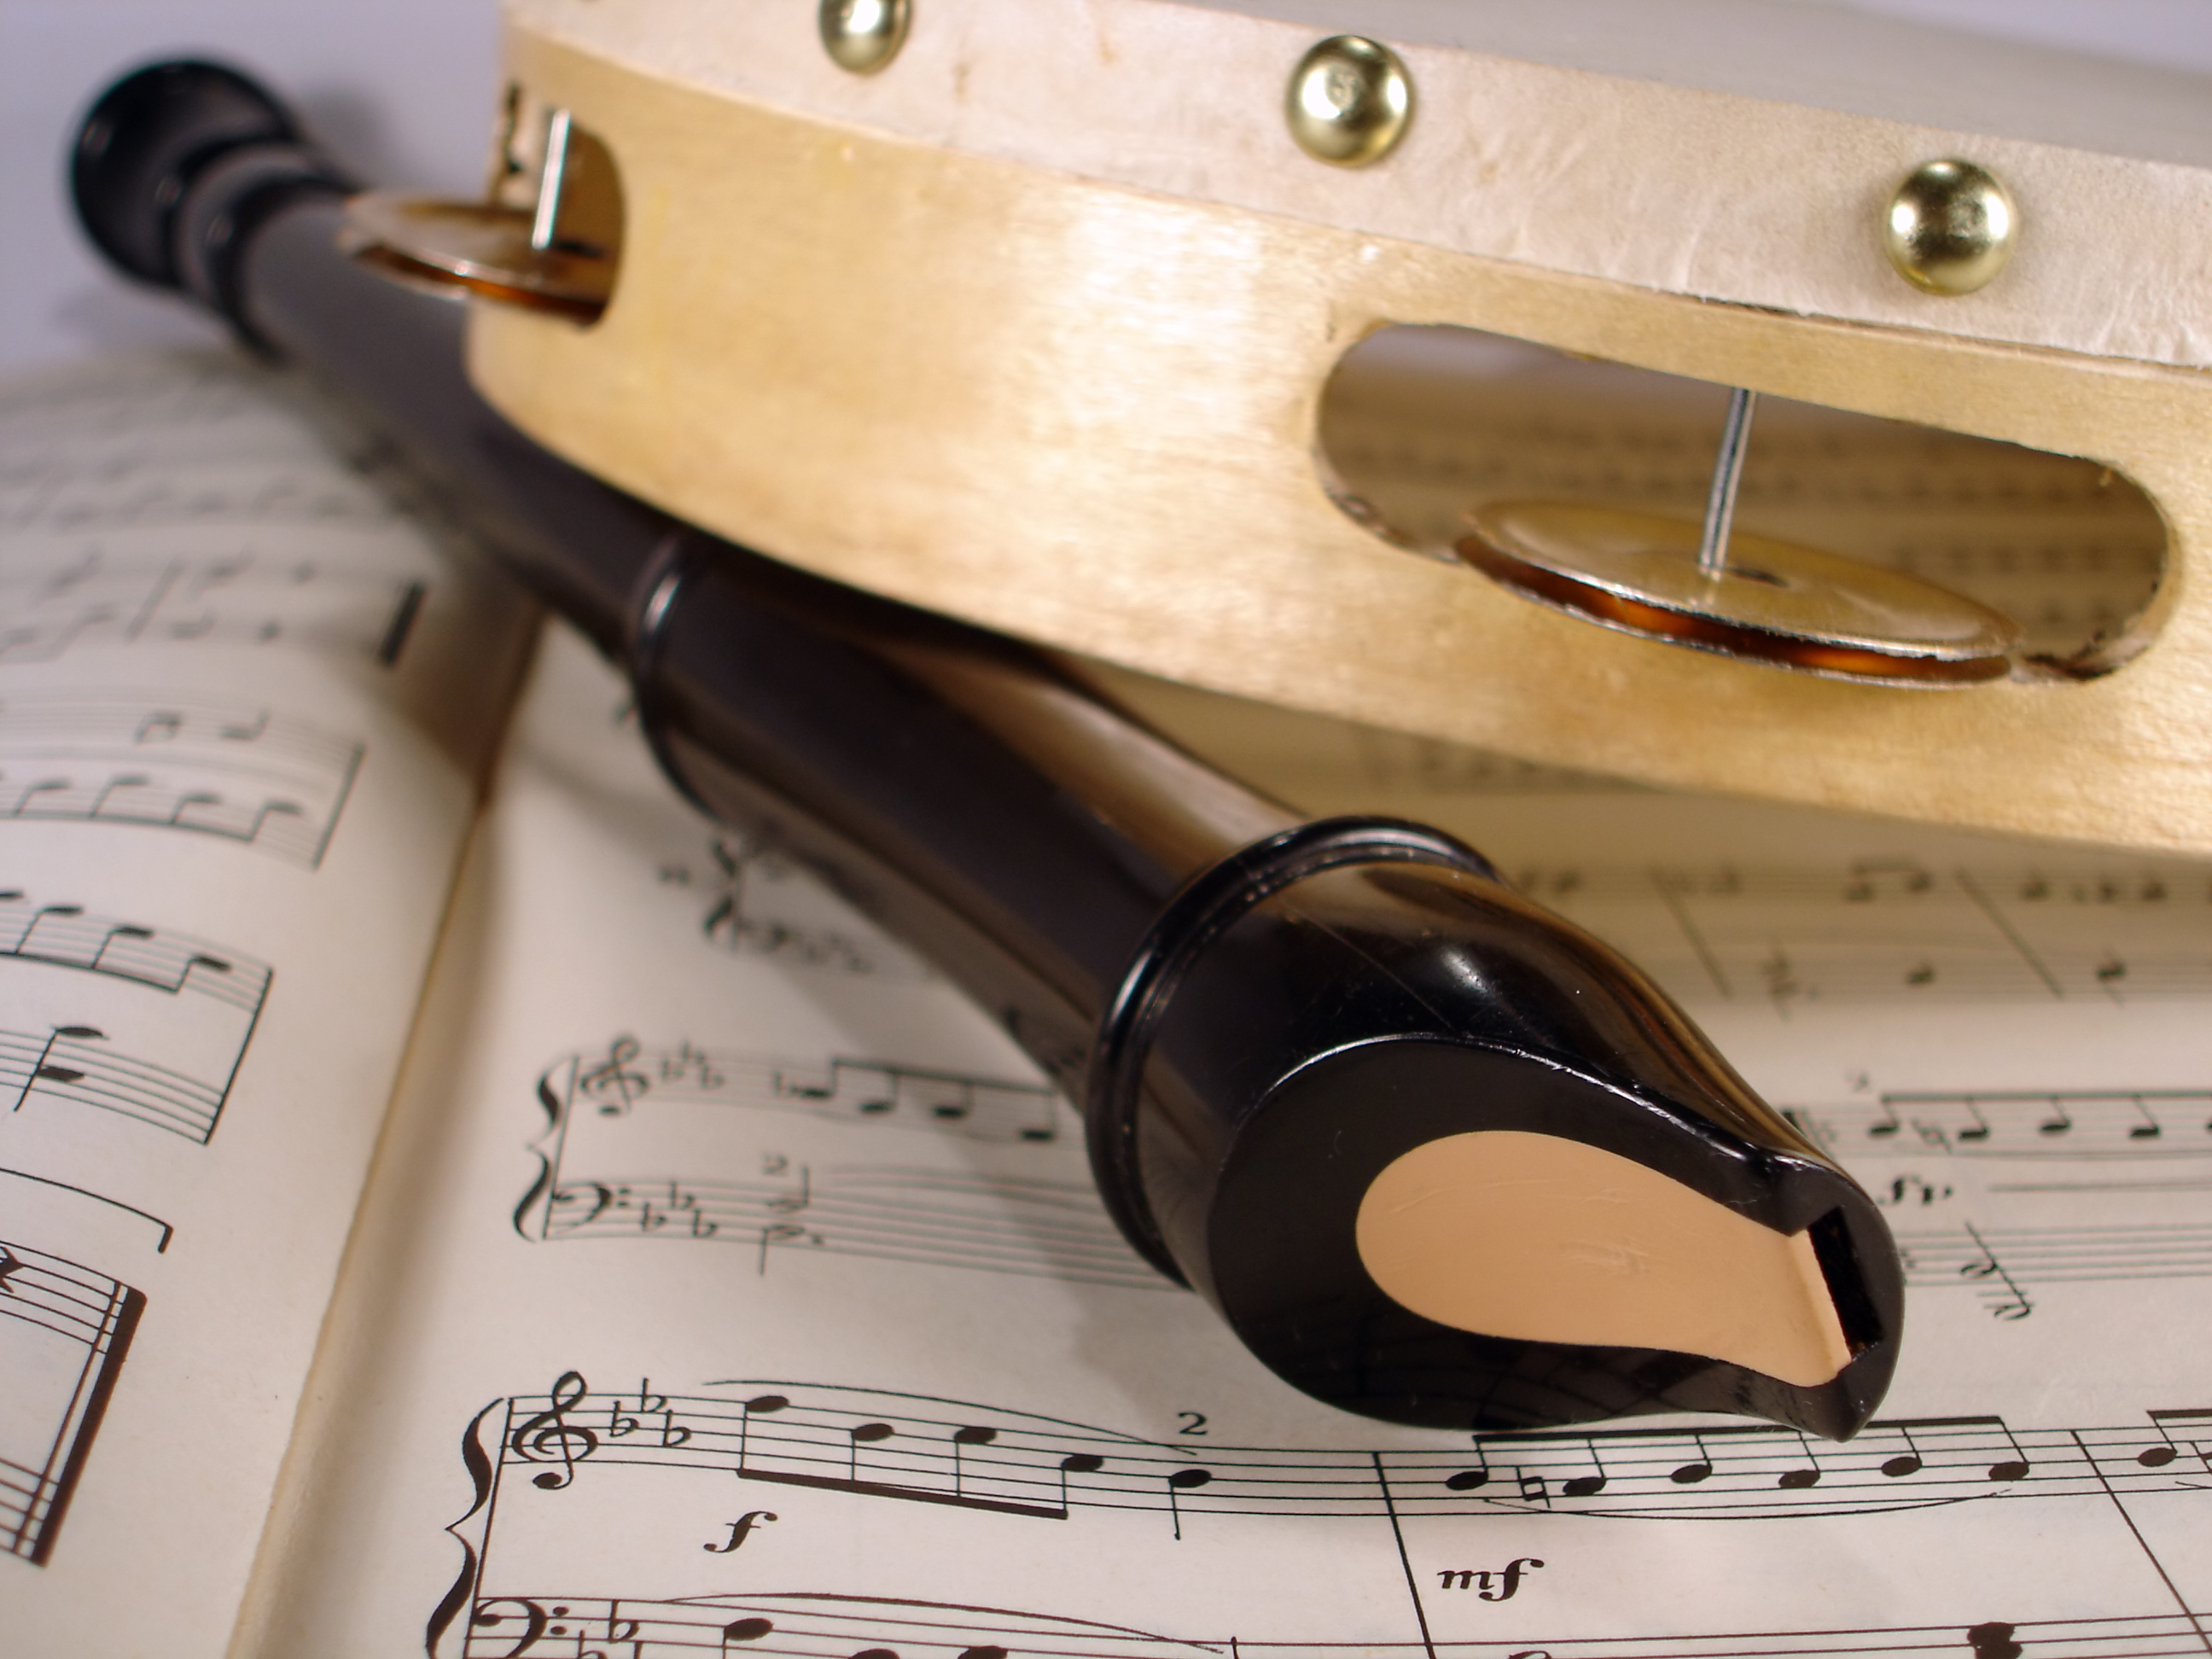 La imagen muestra un a flauta y un pandero sobre unas partituras